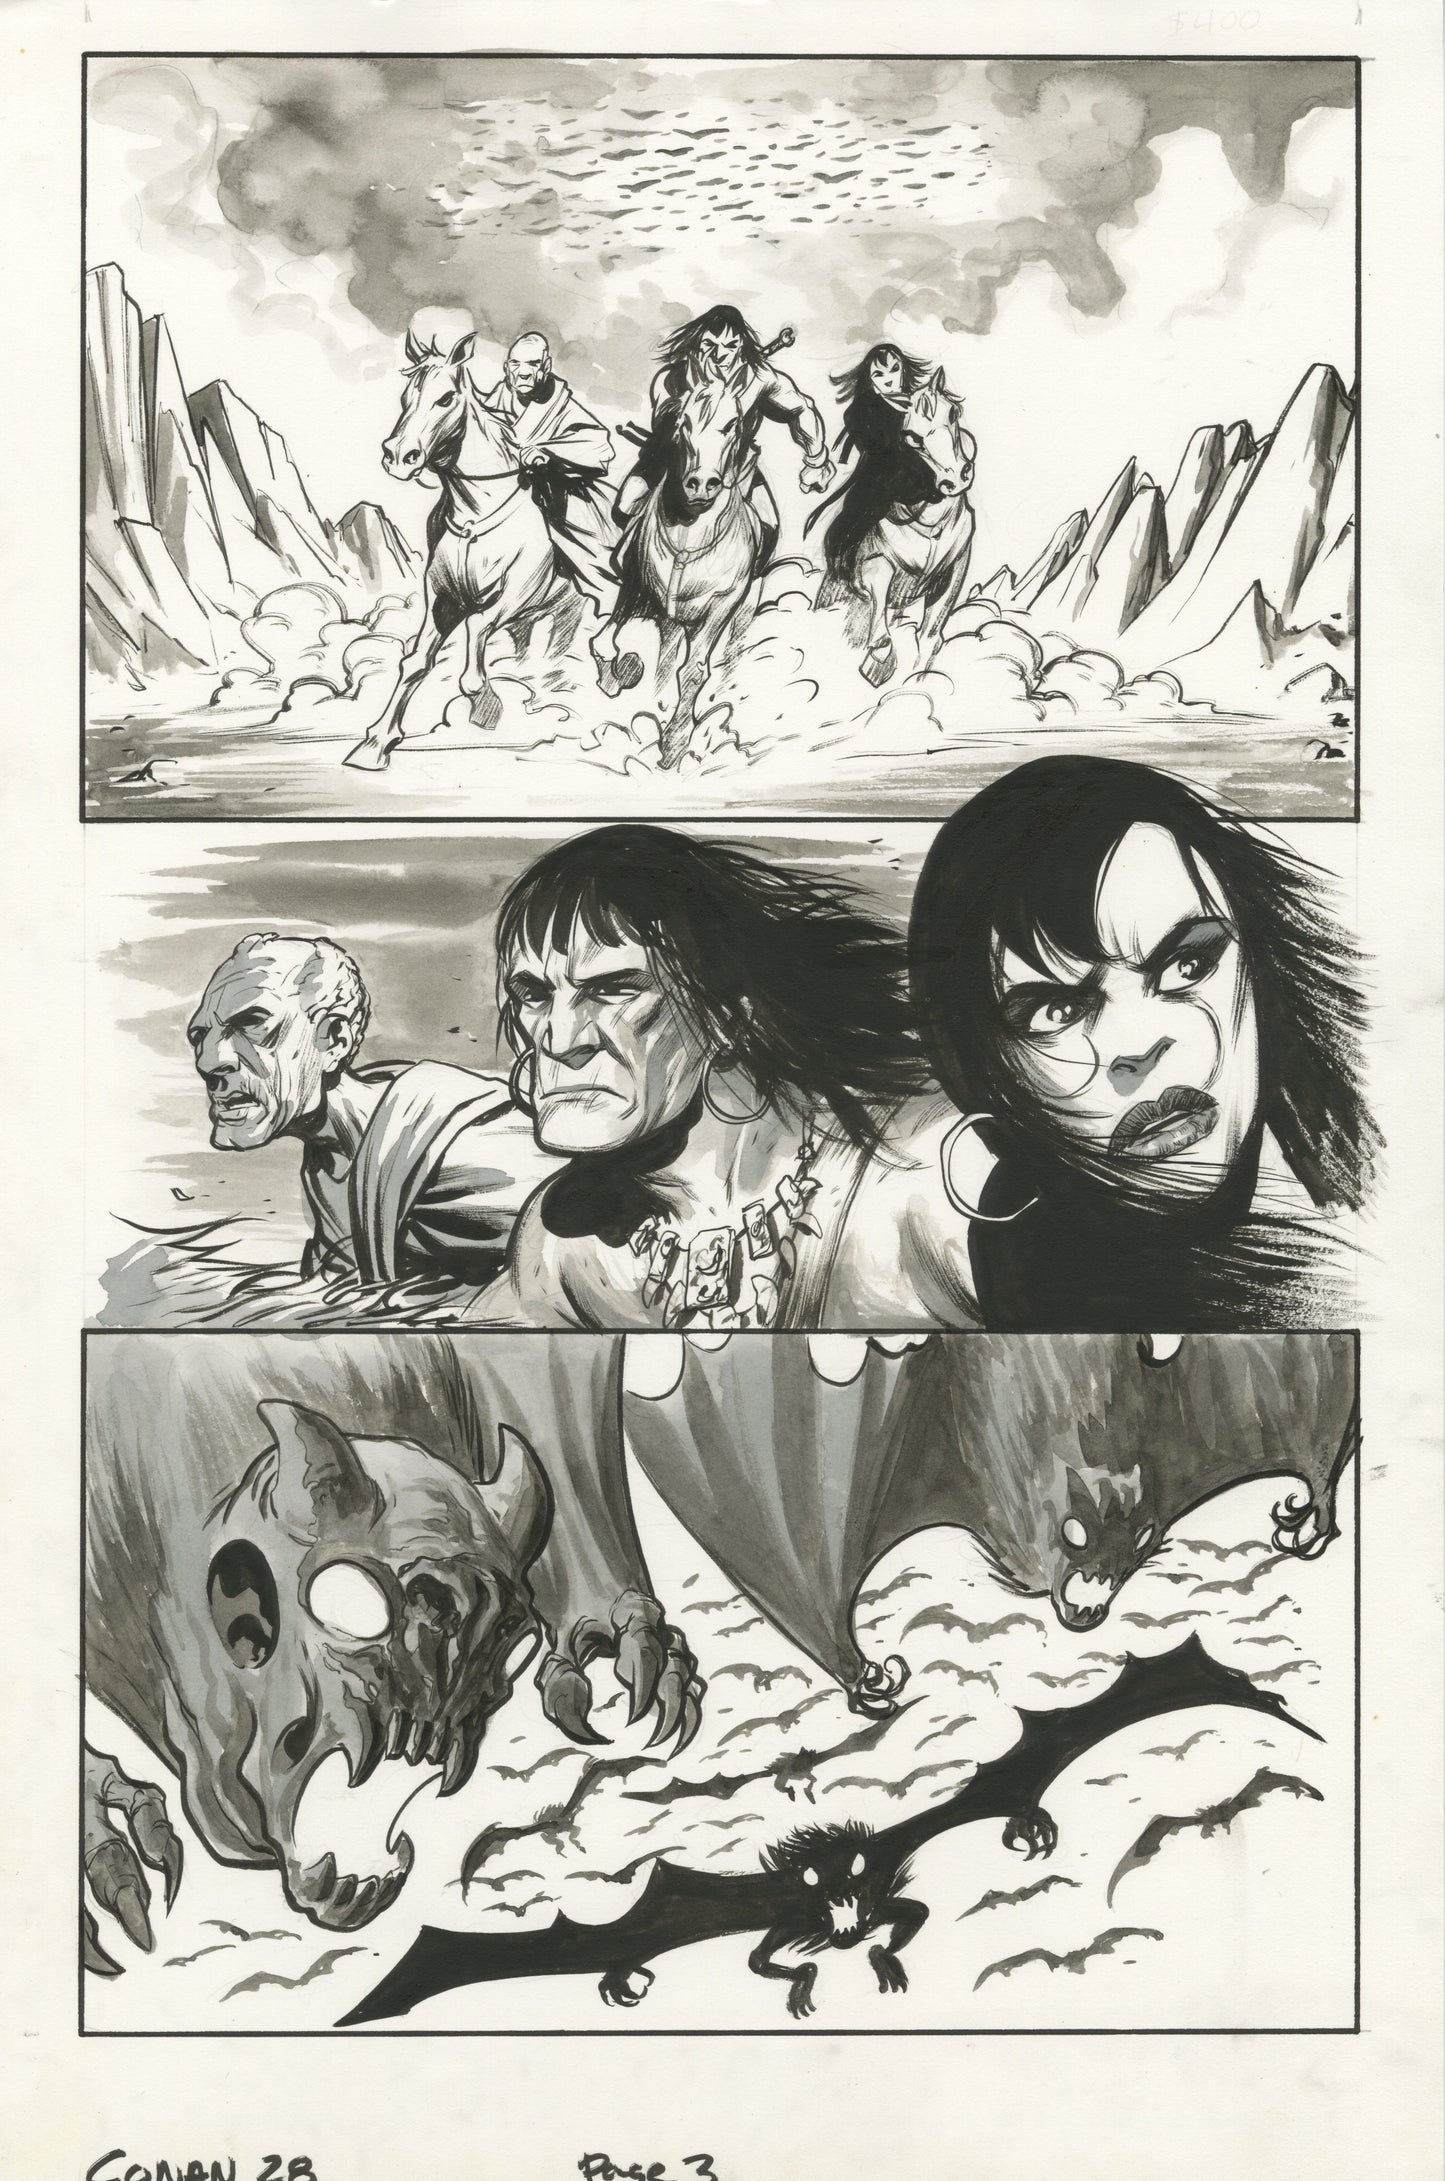 Conan #28, page #03 (2006, Dark Horse)